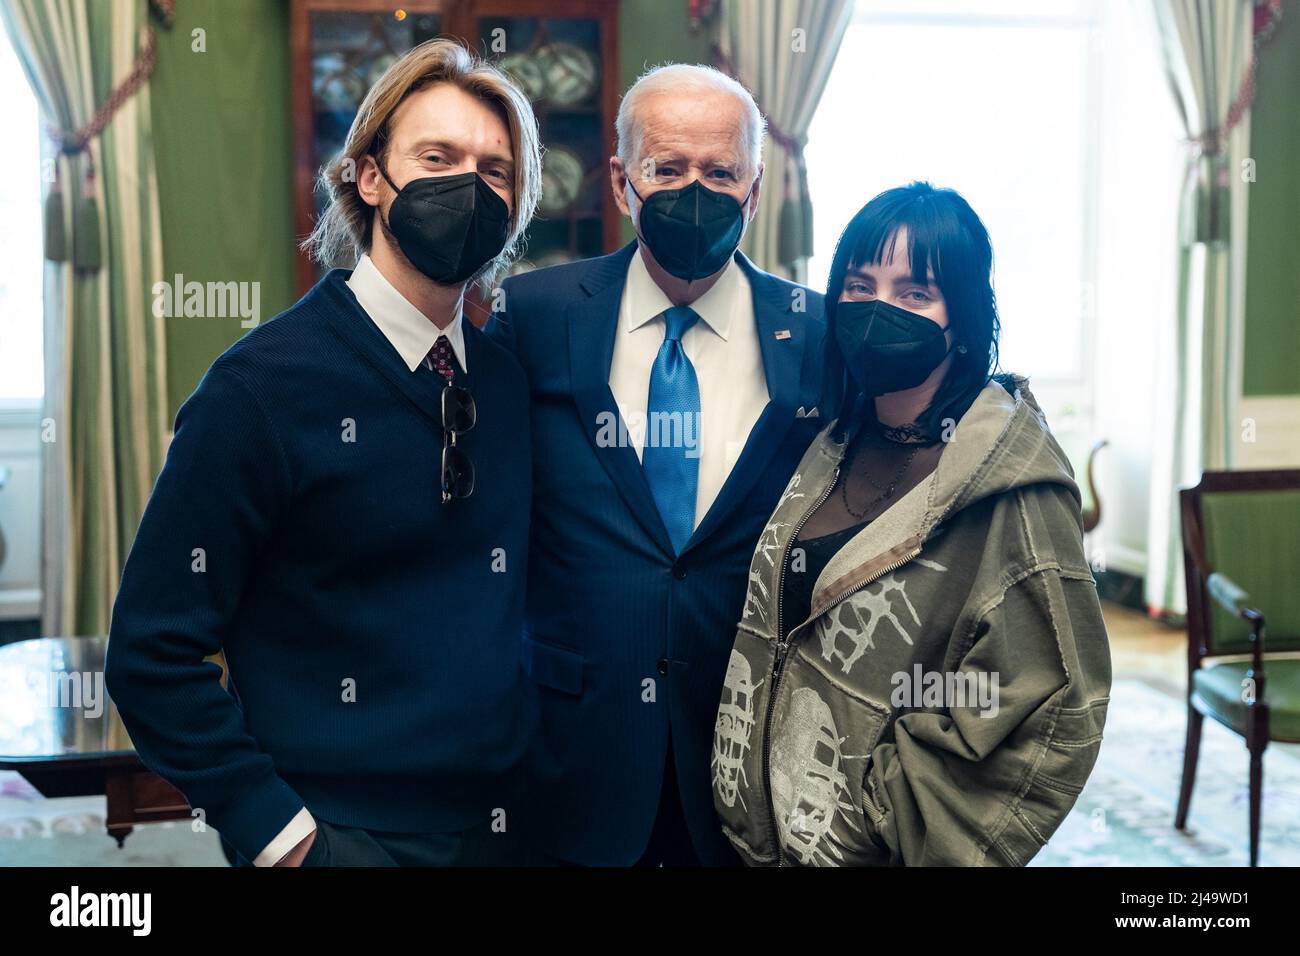 Le président Joe Biden et le commandant de la famille Biden saluent la chanteuse Billie Eilish et son équipe, le mercredi 9 février 2022, dans la salle verte de la Maison Blanche. (Photo officielle de la Maison Blanche par Adam Schultz) Banque D'Images